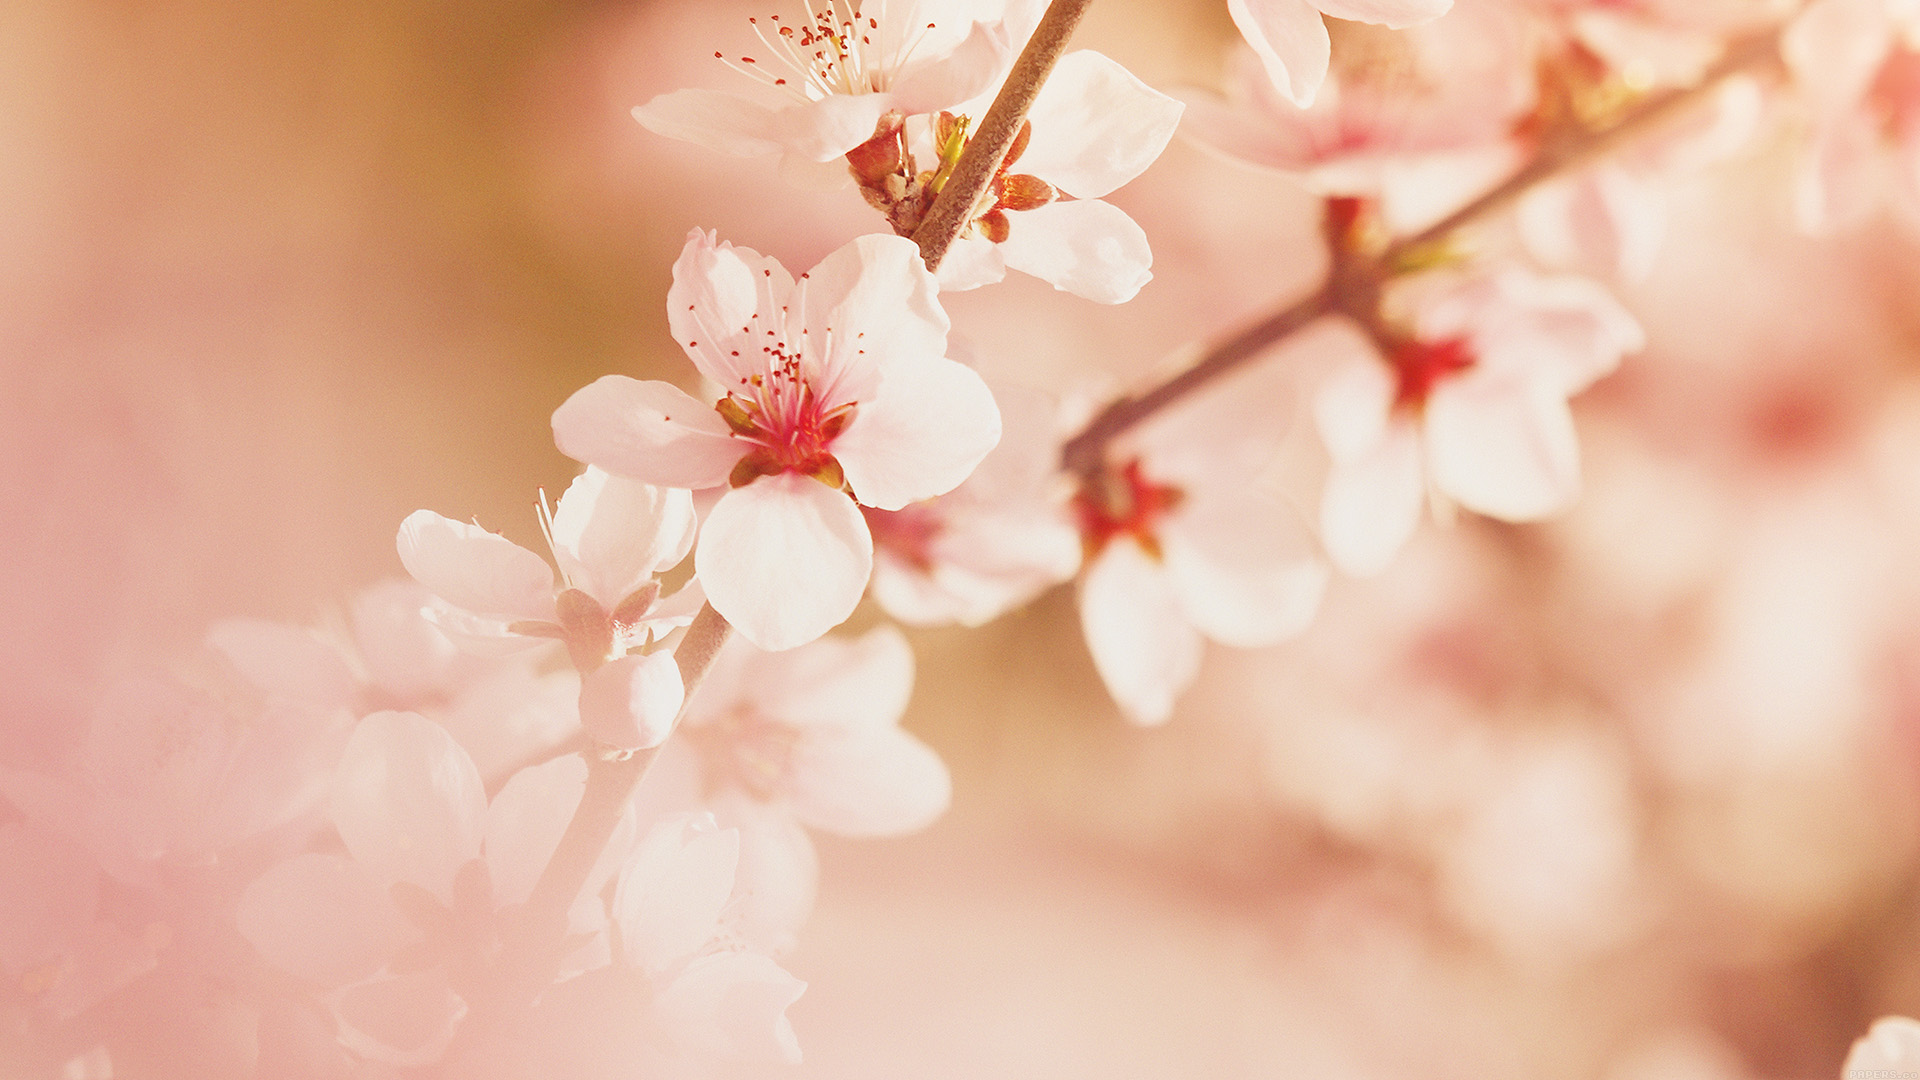 wallpaper for desktop, laptop. spring flower sullysully cherry blossom nature